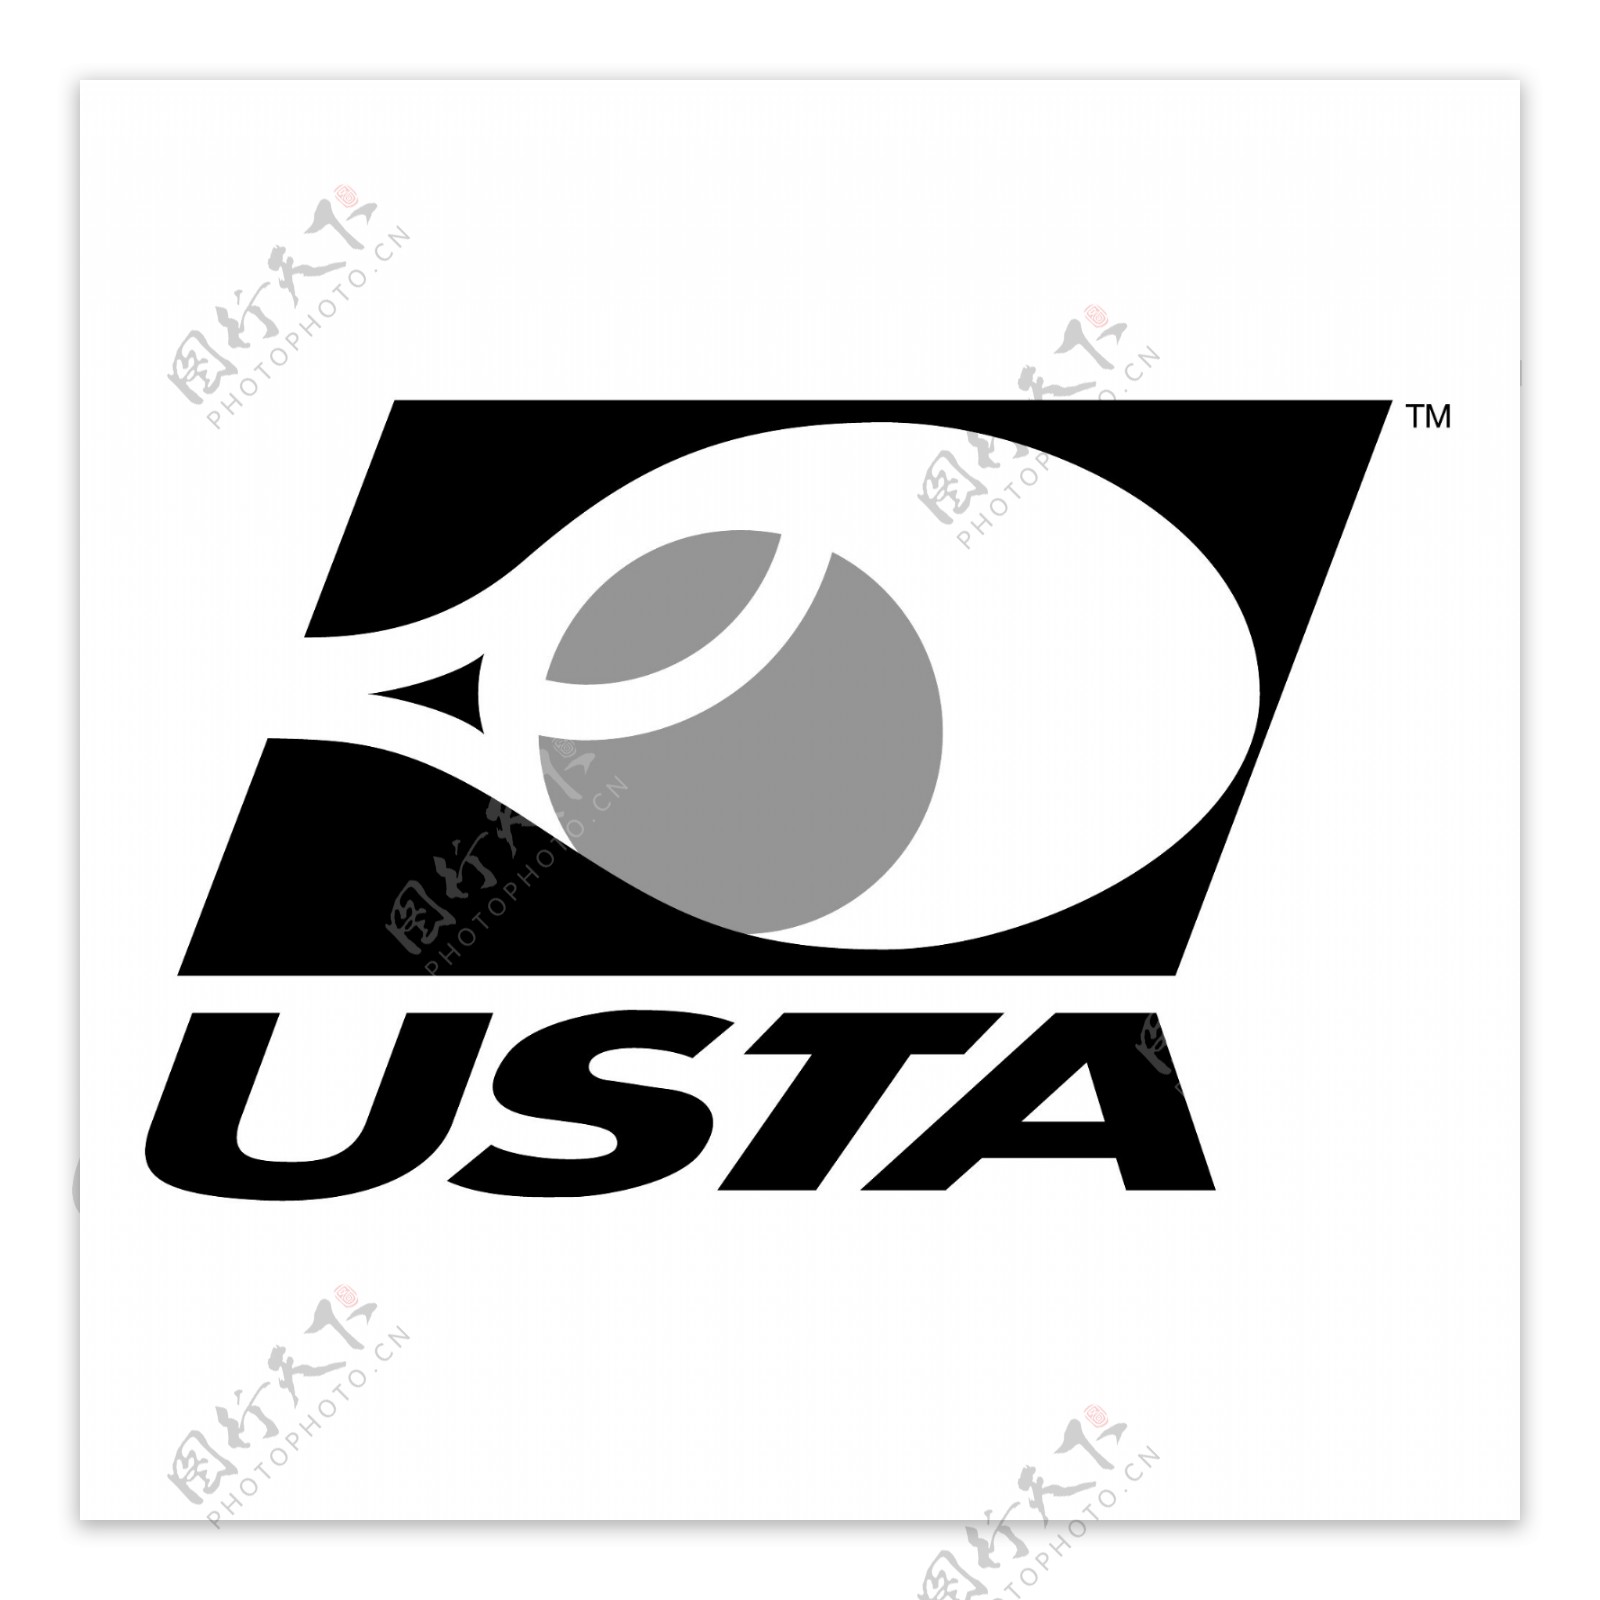 美国网球协会